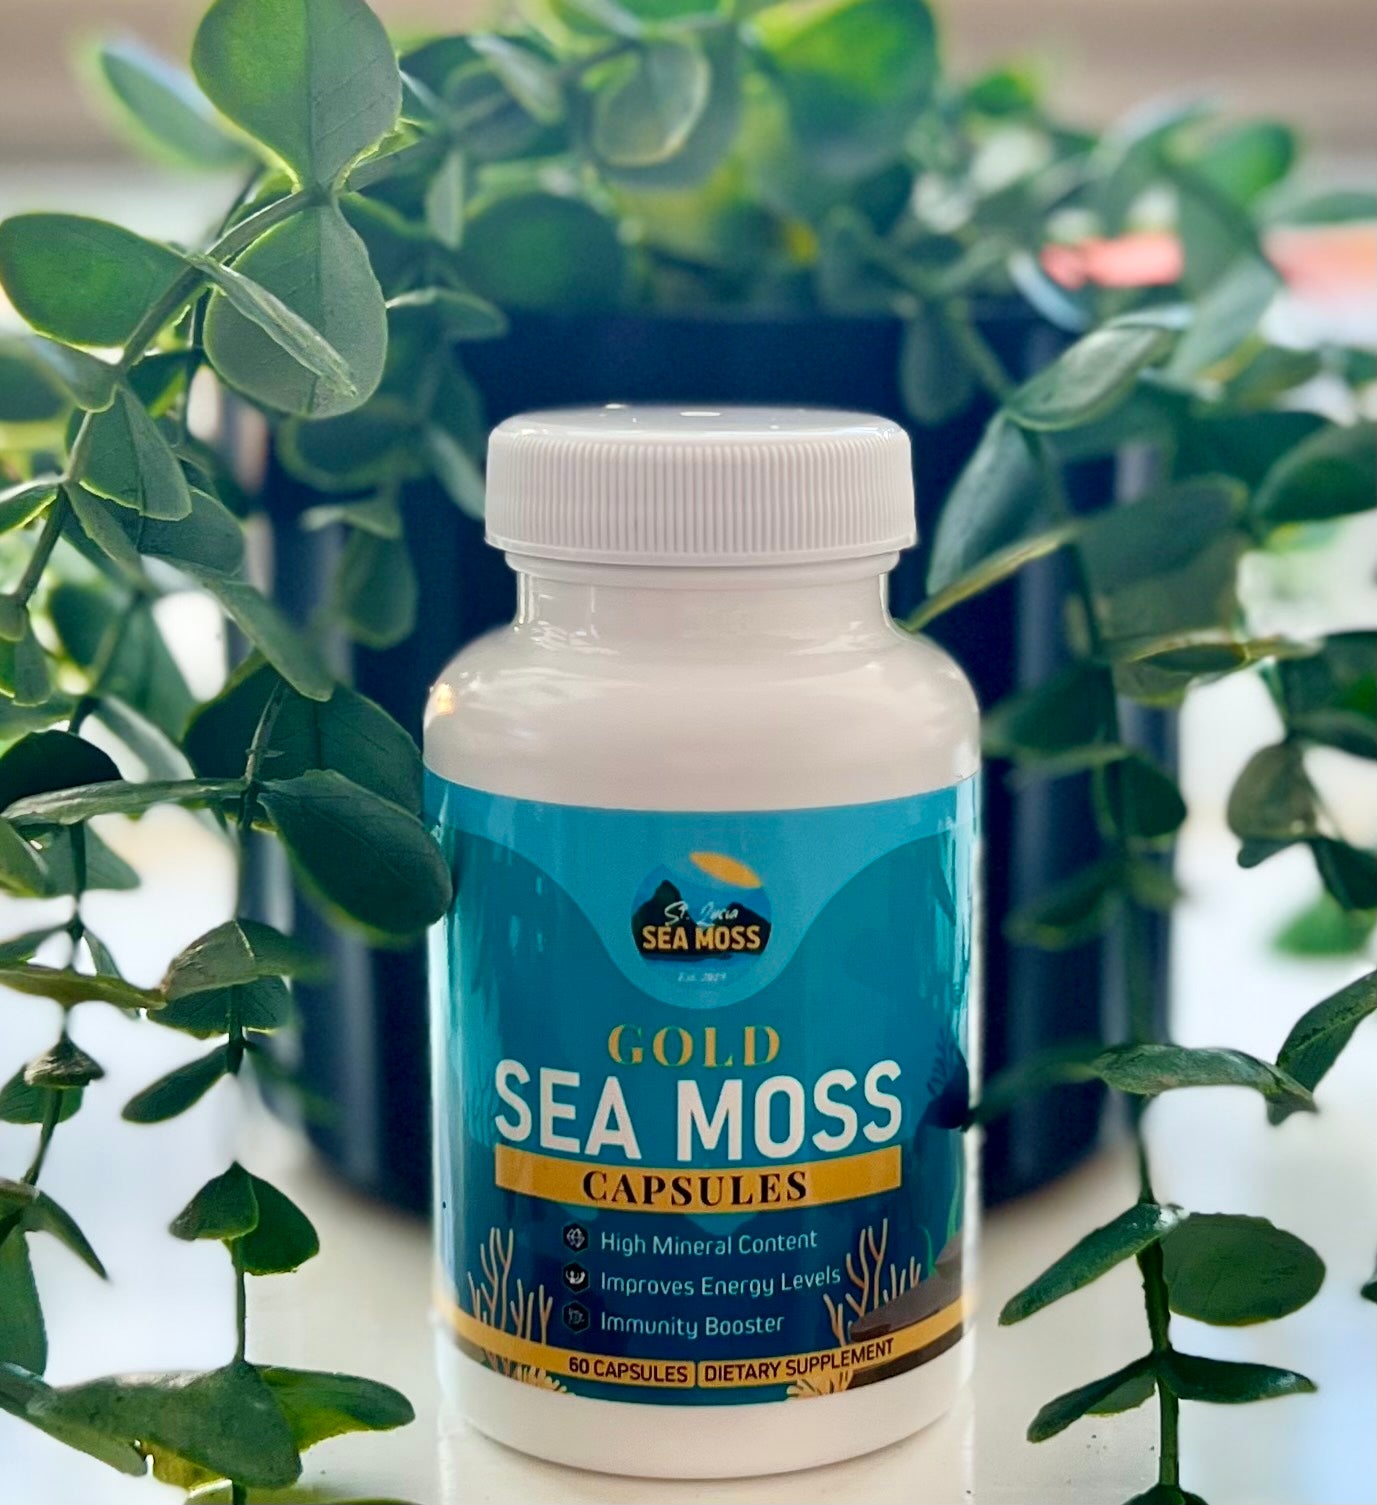 Gold St Lucia Sea Moss Capsules - St Lucia Sea Moss